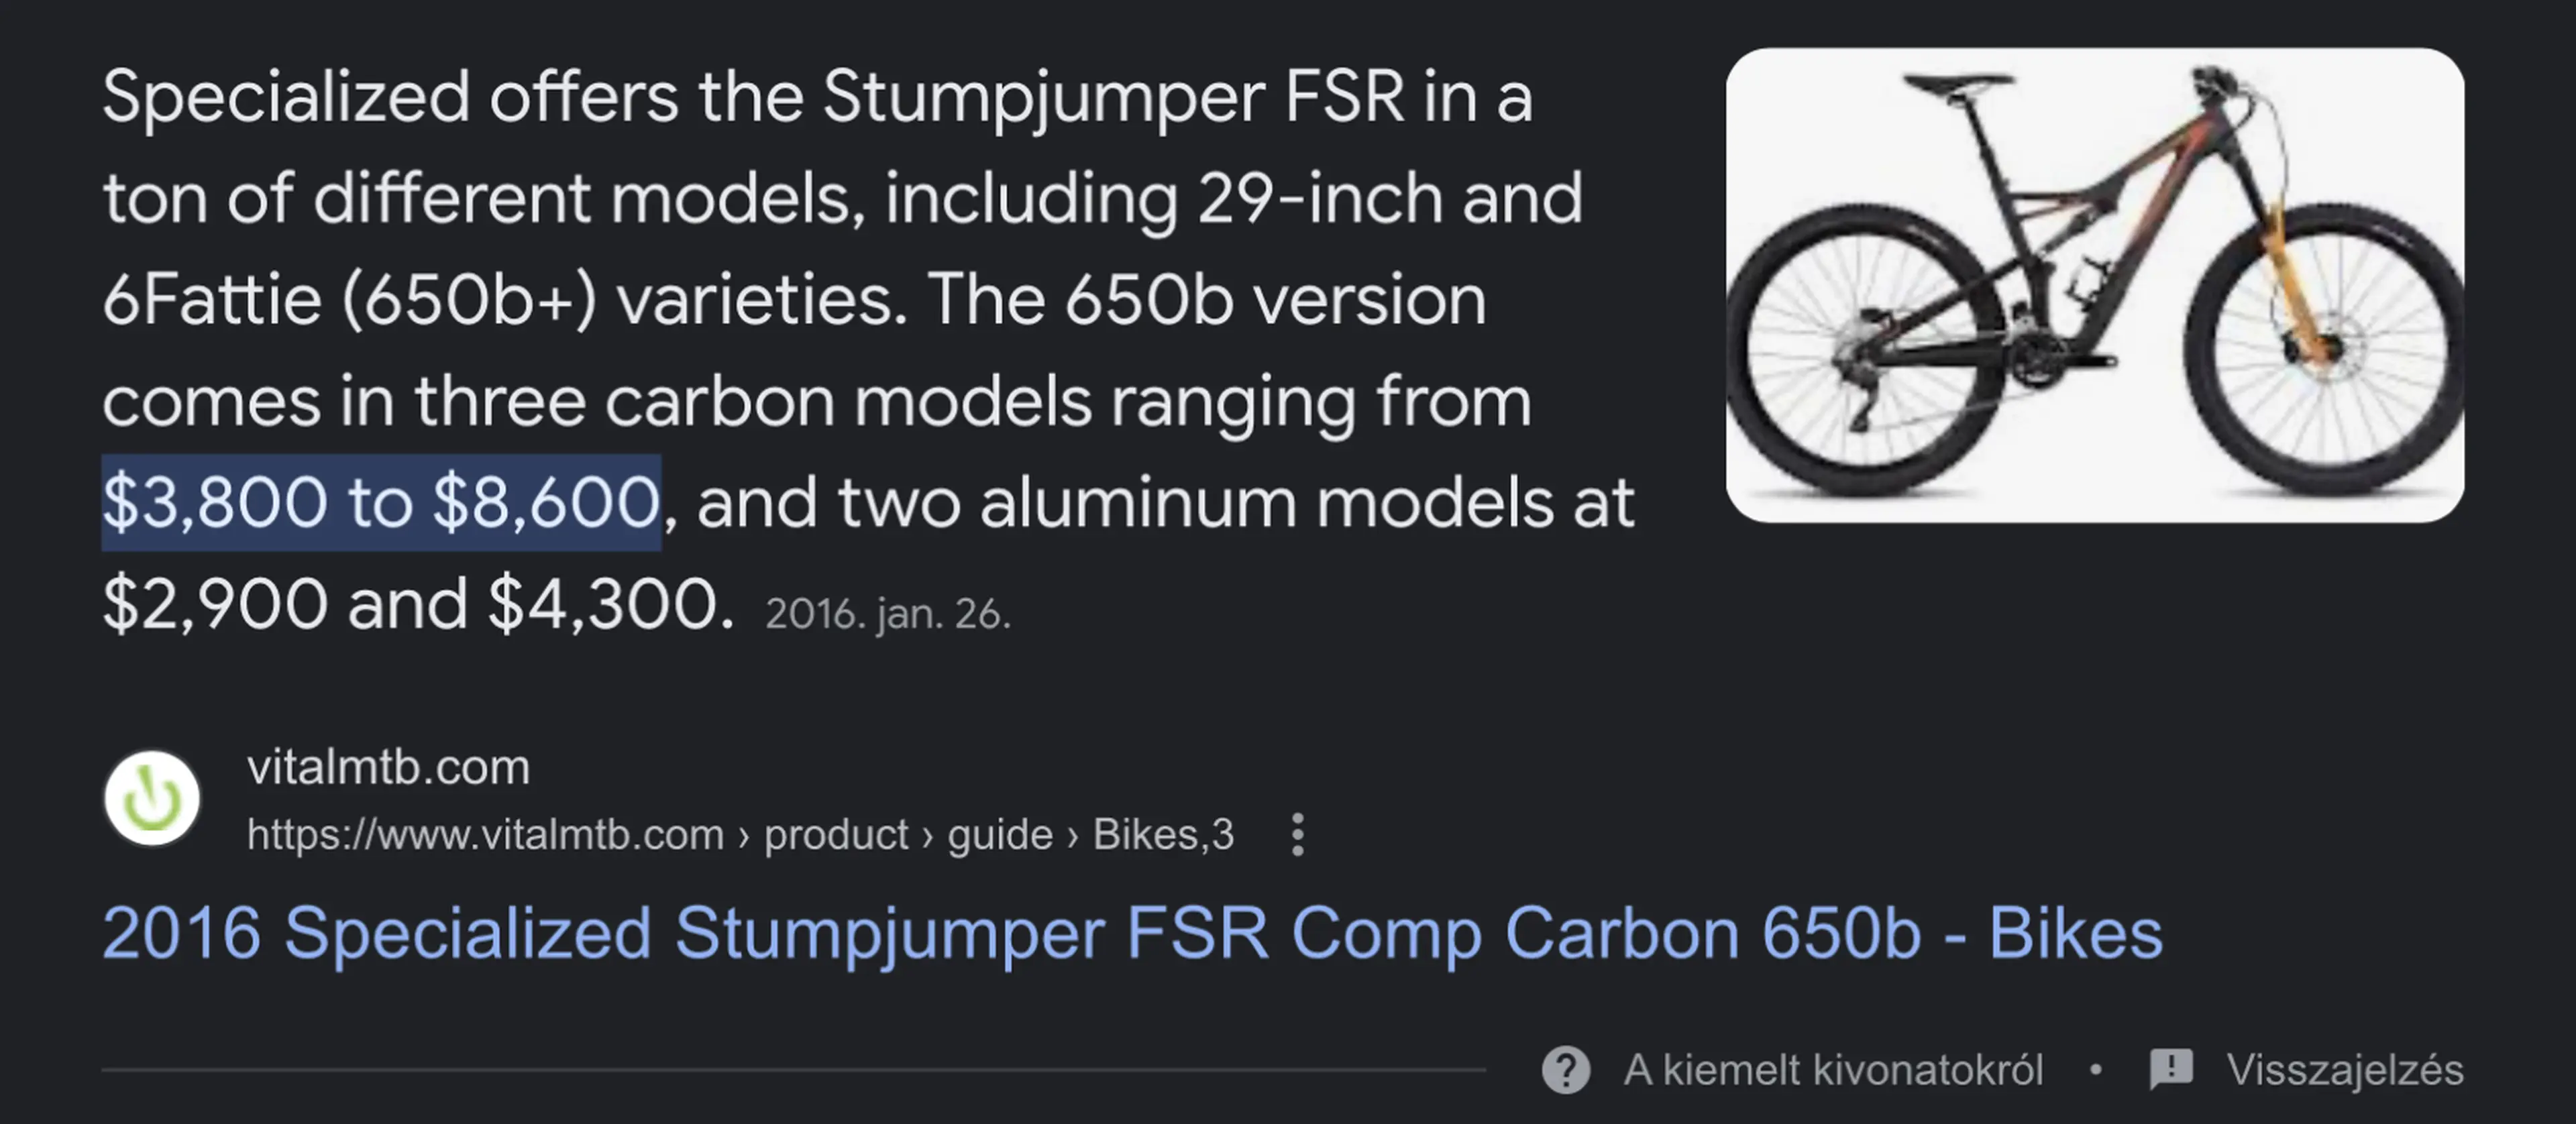 Image Specialized Stumpjumper fsr